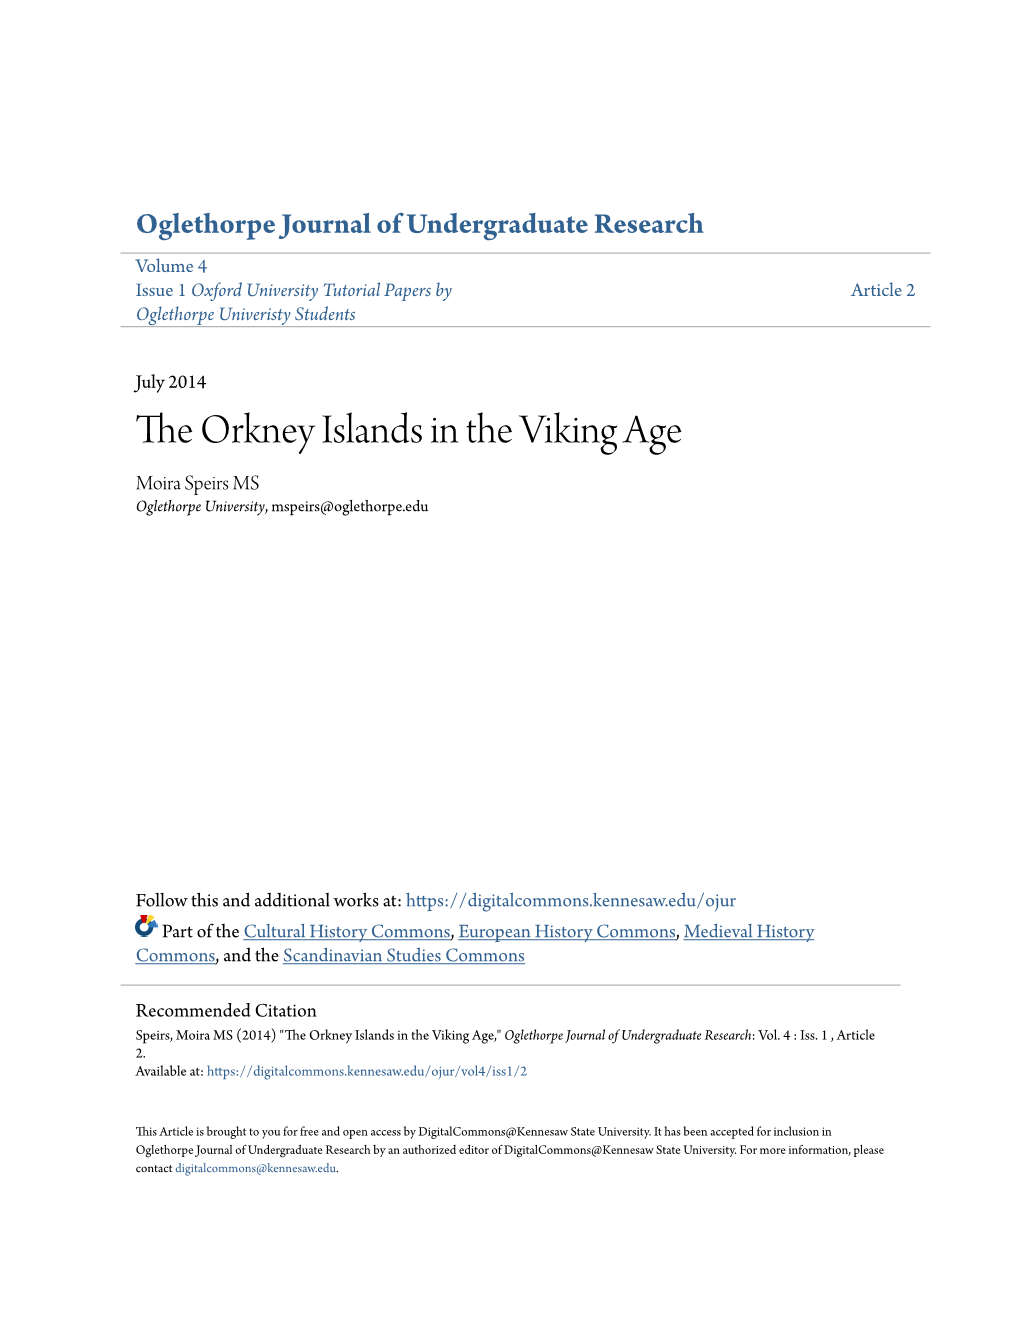 The Orkney Islands in the Viking Age Moira Speirs MS Oglethorpe University, Mspeirs@Oglethorpe.Edu